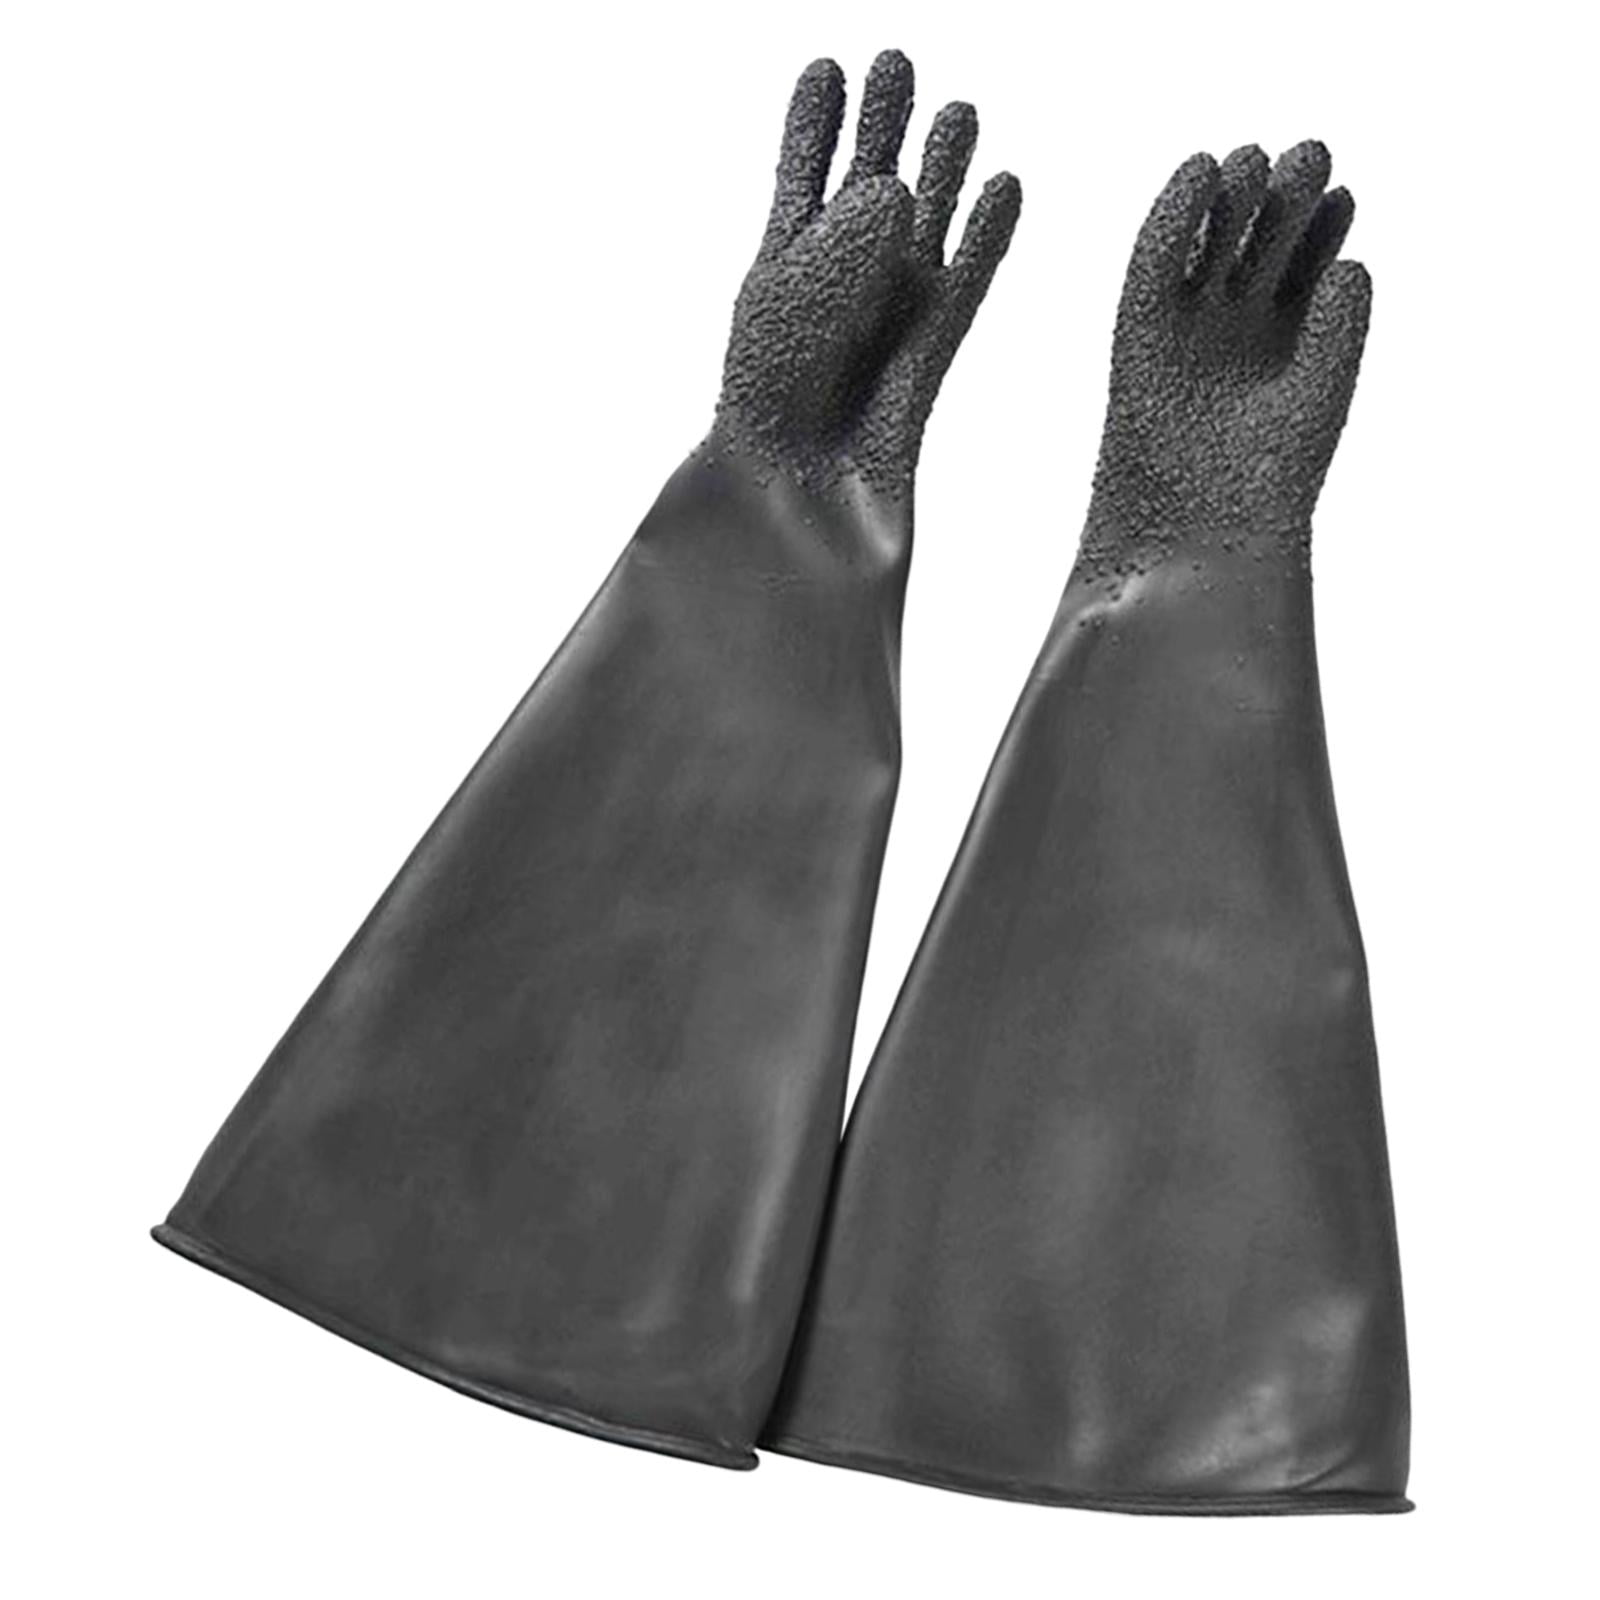 Sandblasting Protective Gloves Resistant Industrial Gloves for Workshop ...